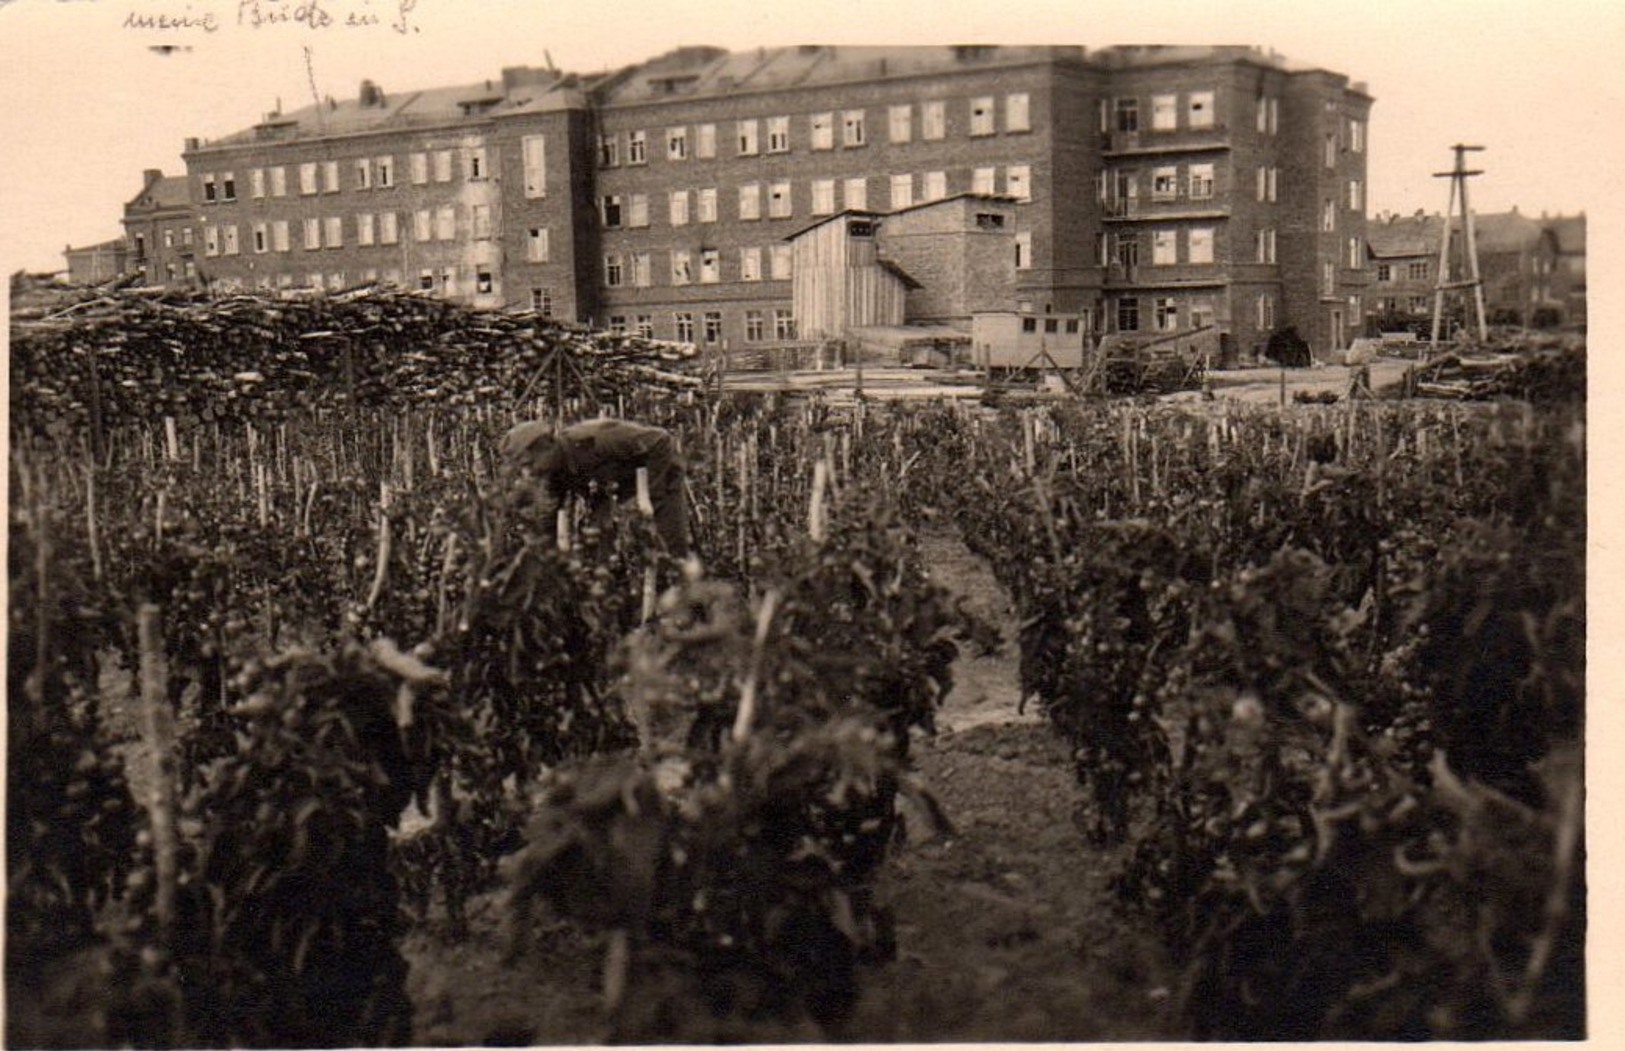 Soldat Allemand au milieu de ses Vignes - Raisin & Vendanges en perspective à Smolensk.jpg